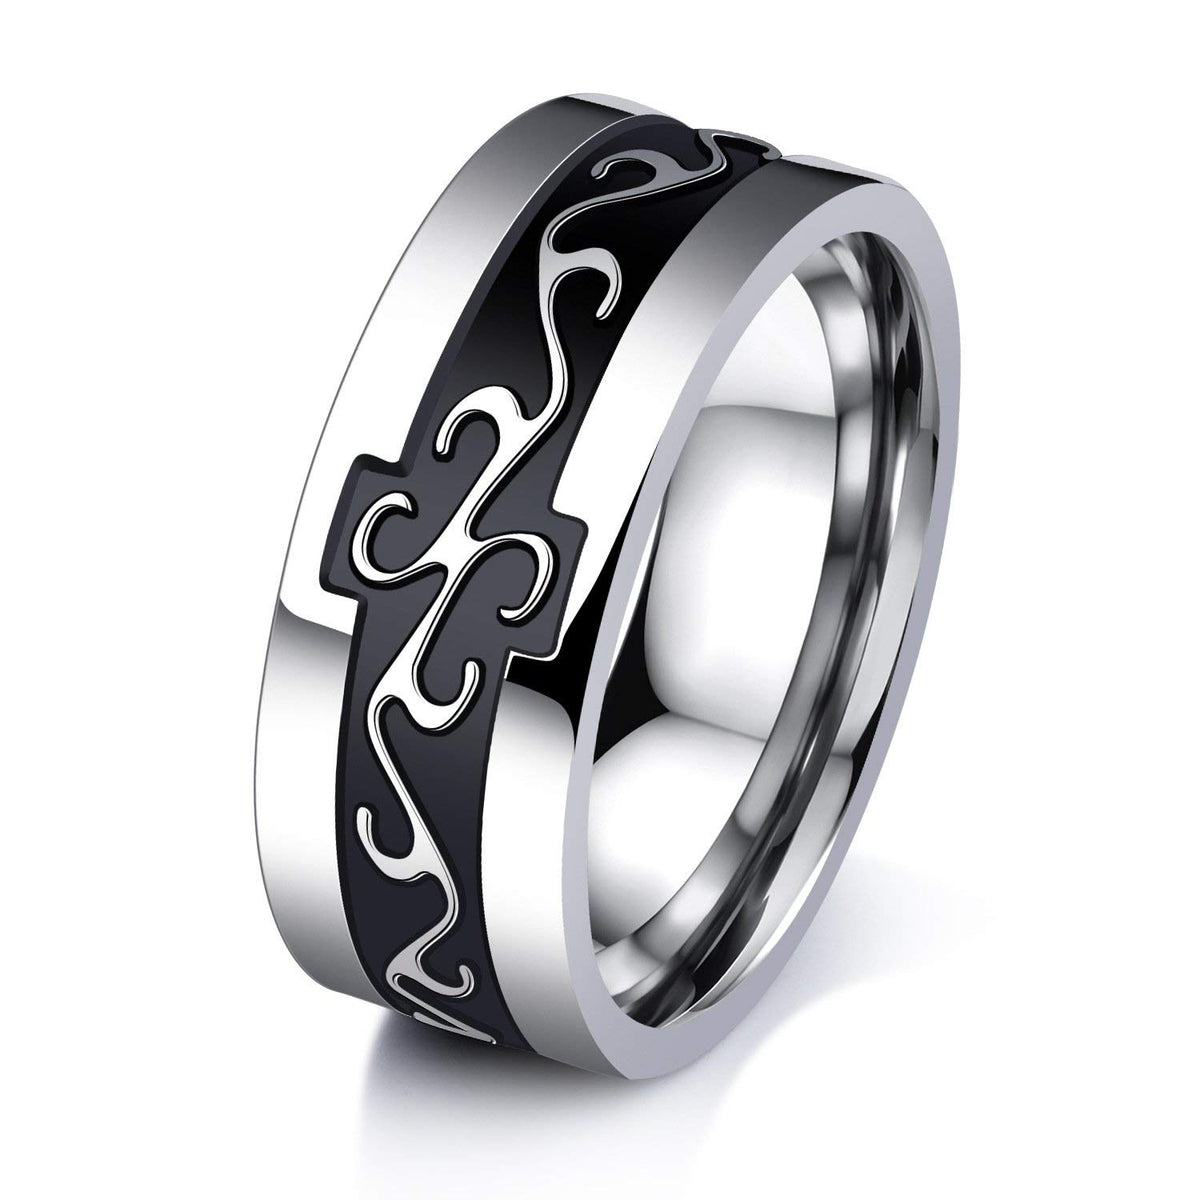 Black Stainless Steel Rings for Men 6pcs Mens Rings Band Fidget Ring  Anxiety Ring Cool Spinner Rings for Men|Amazon.com